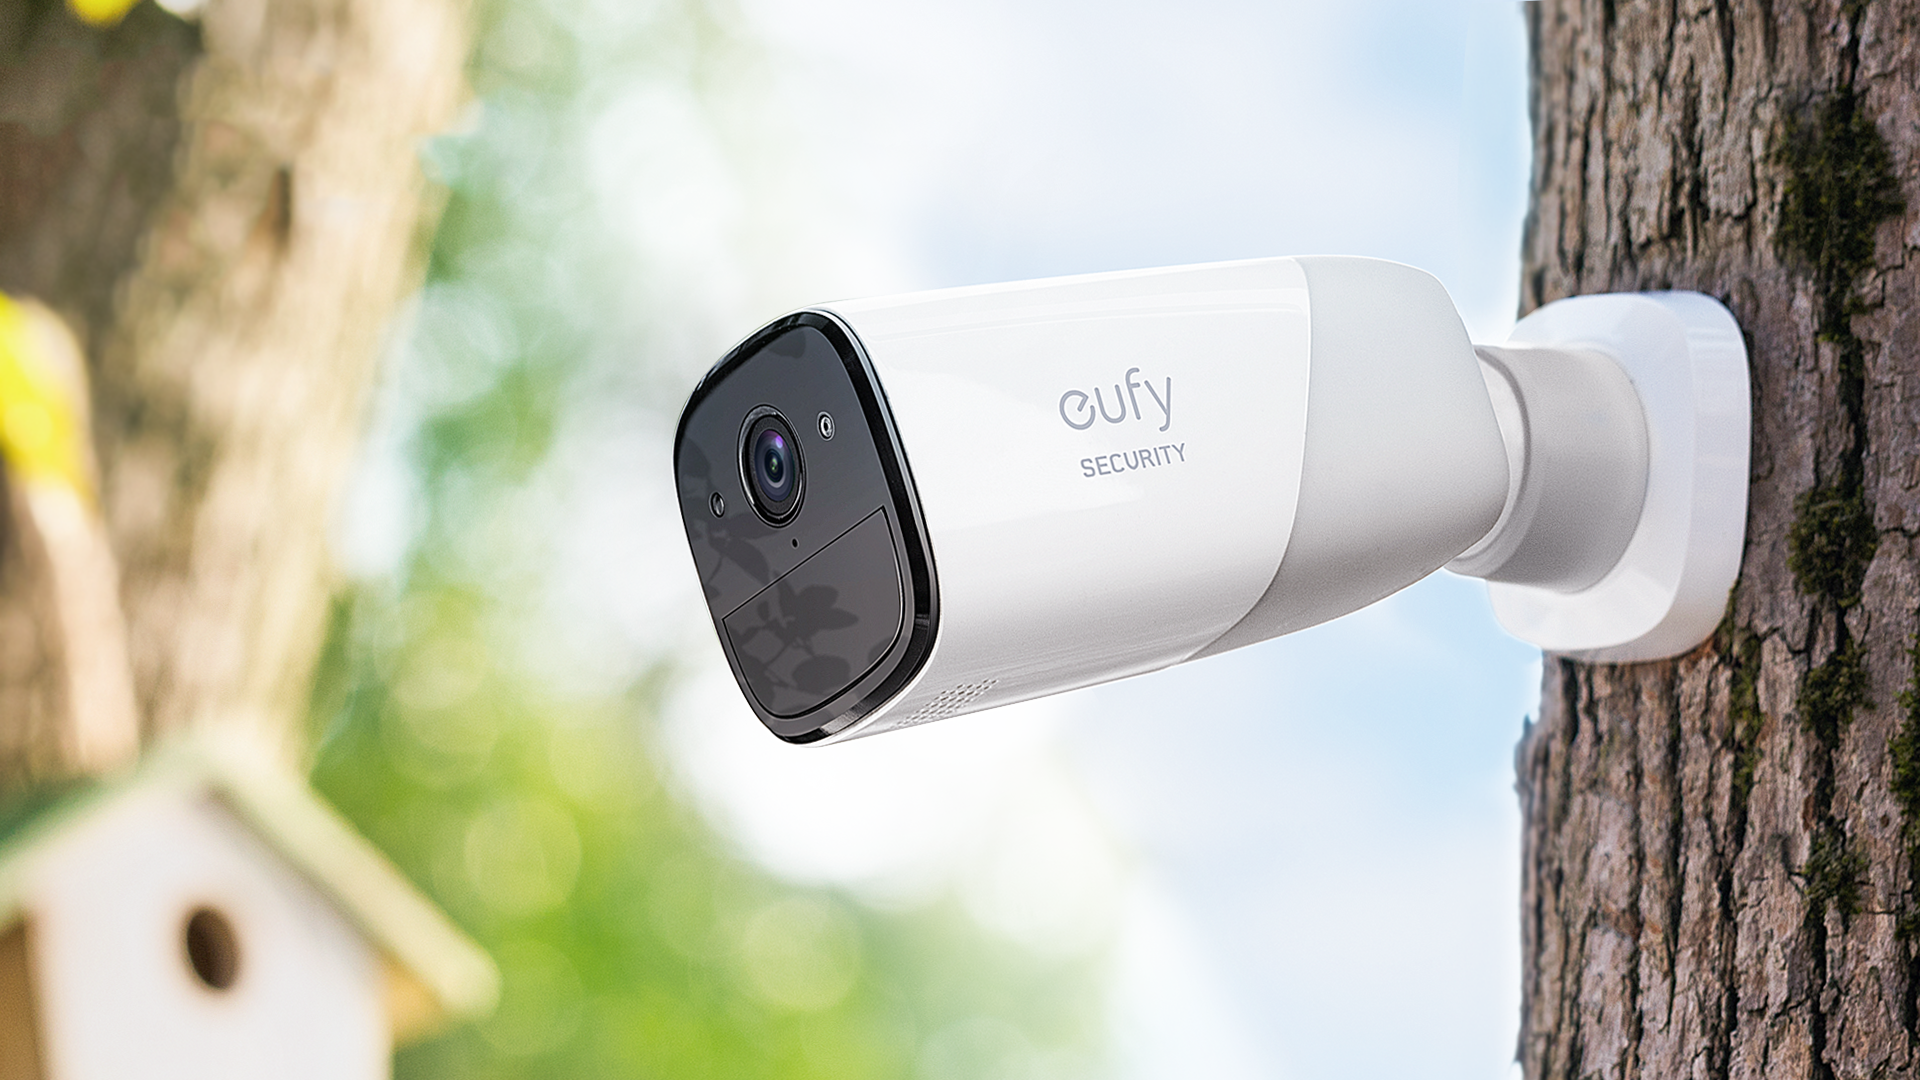 Tek şarjla 365 gün kullanım: Anker EufyCam güvenlik kamerası